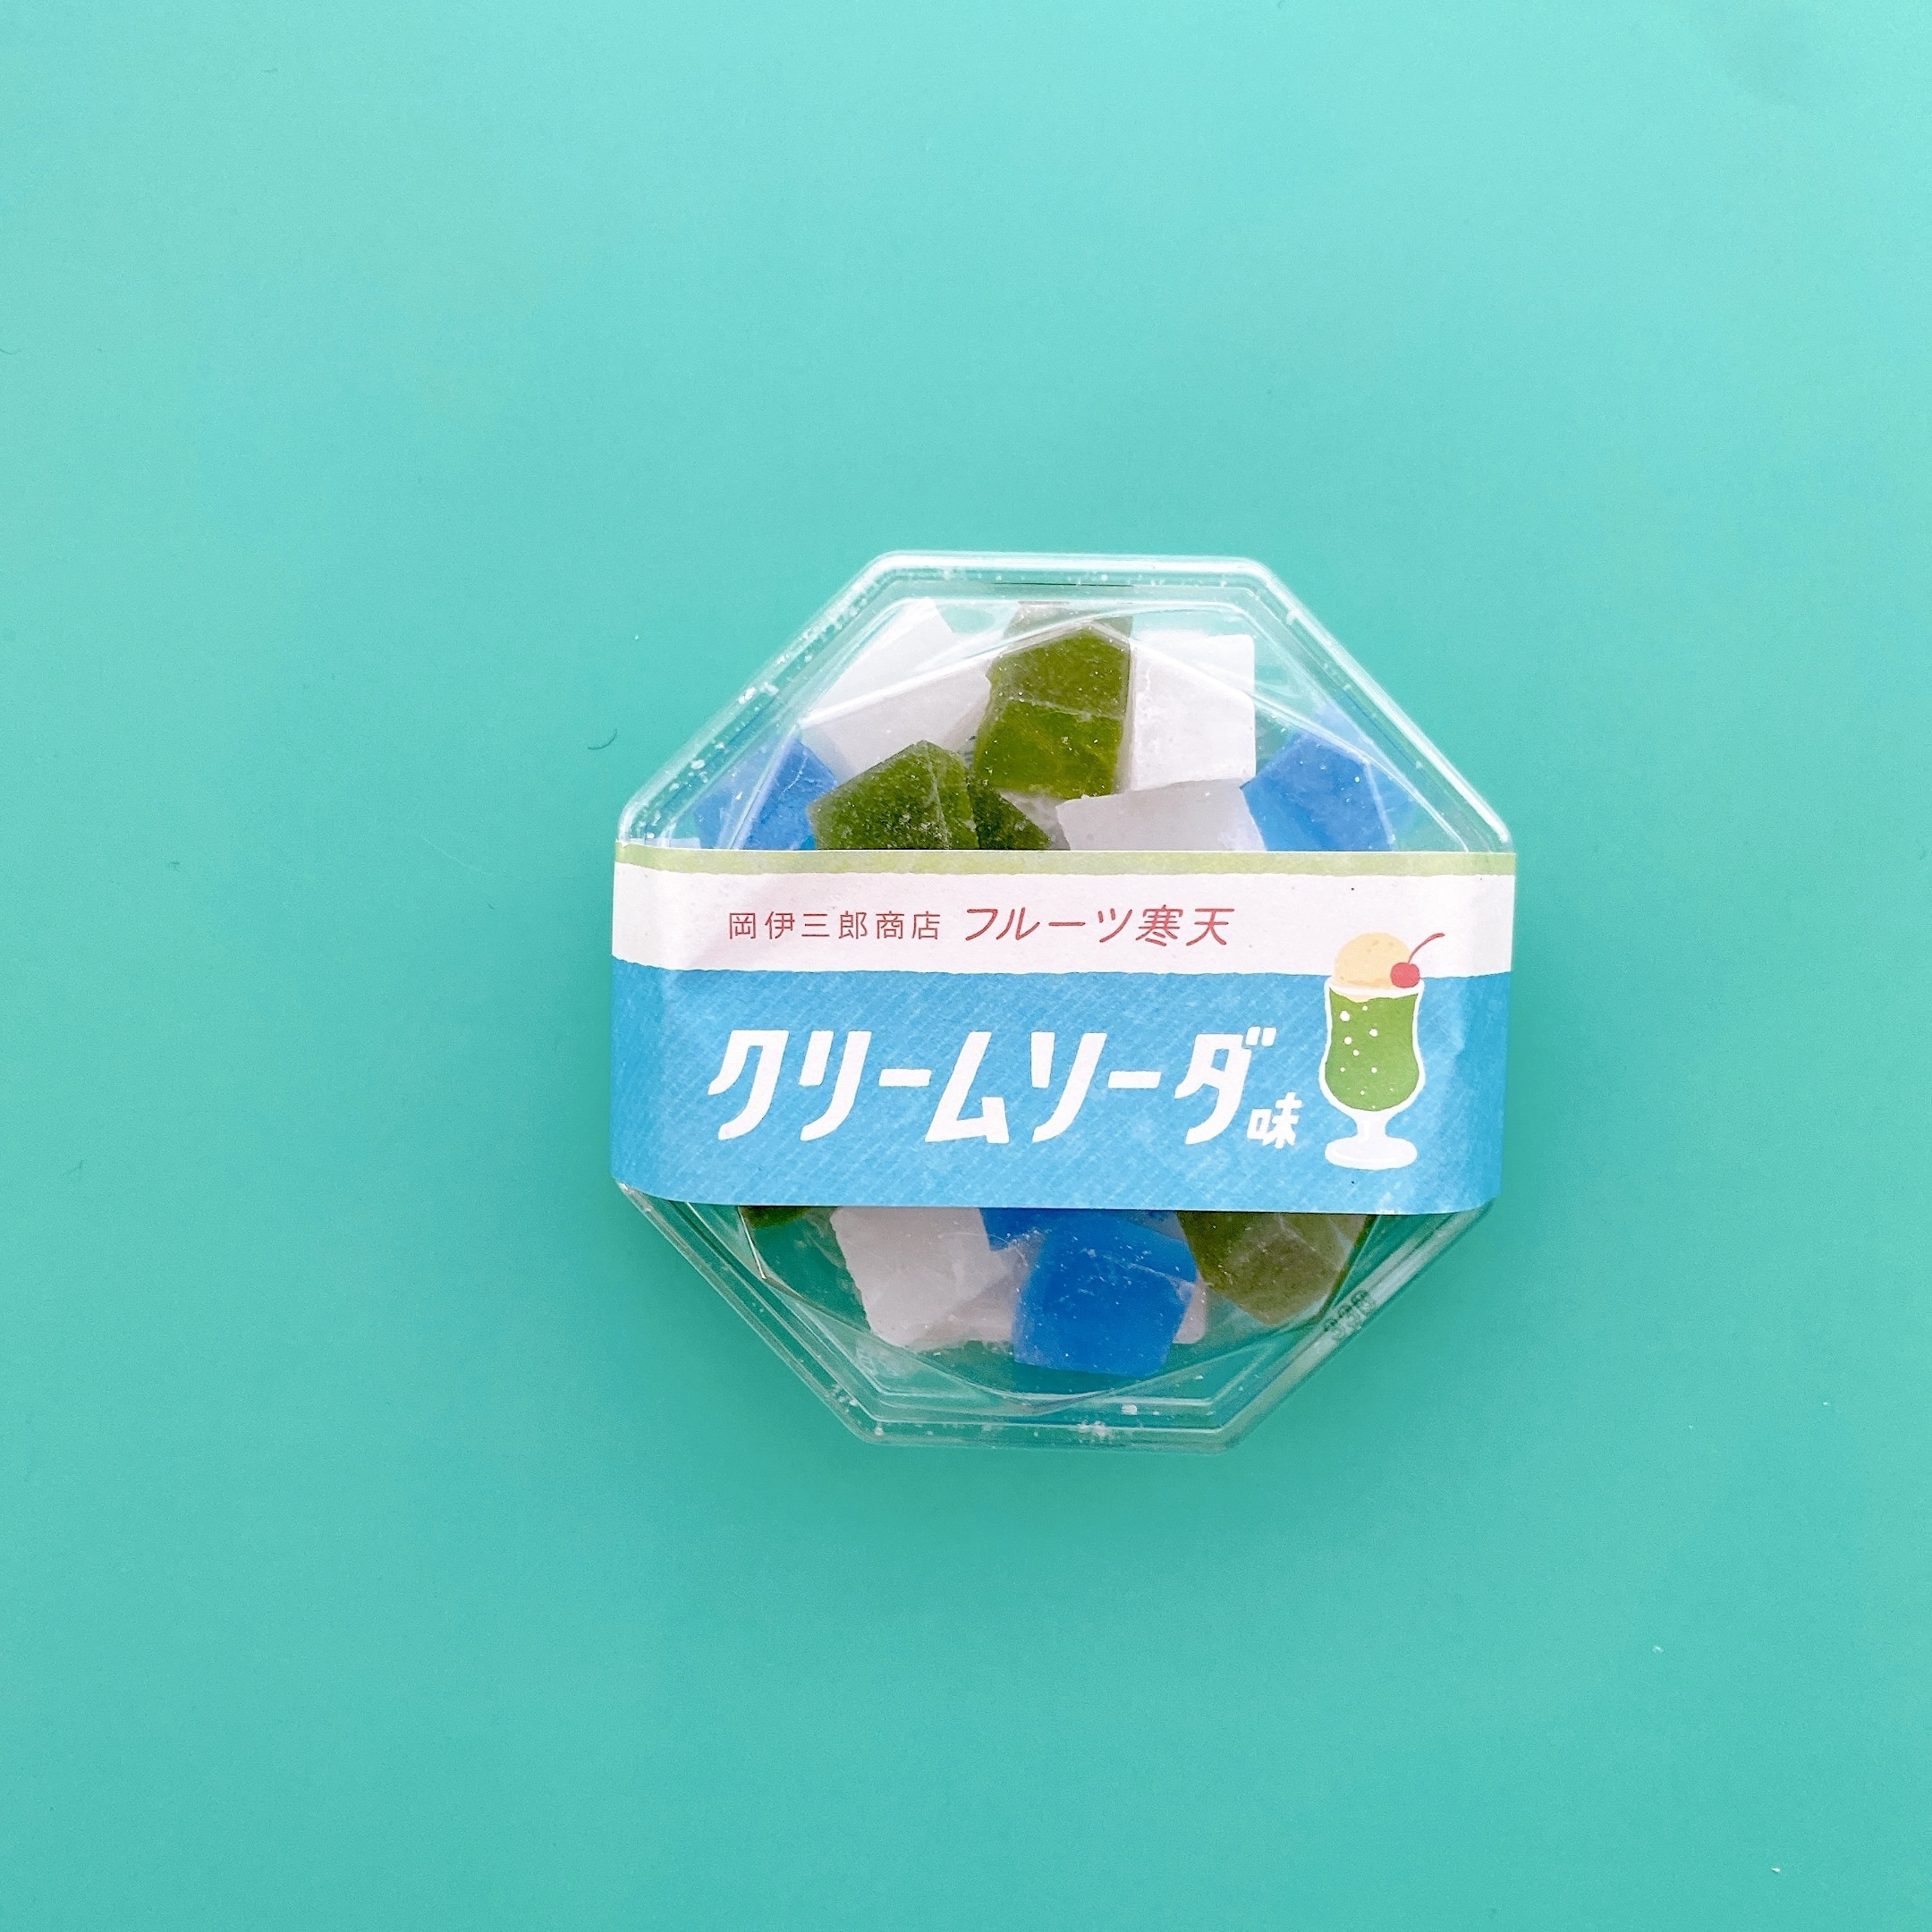 日本百貨店で販売されている琥珀糖「クリームソーダ」